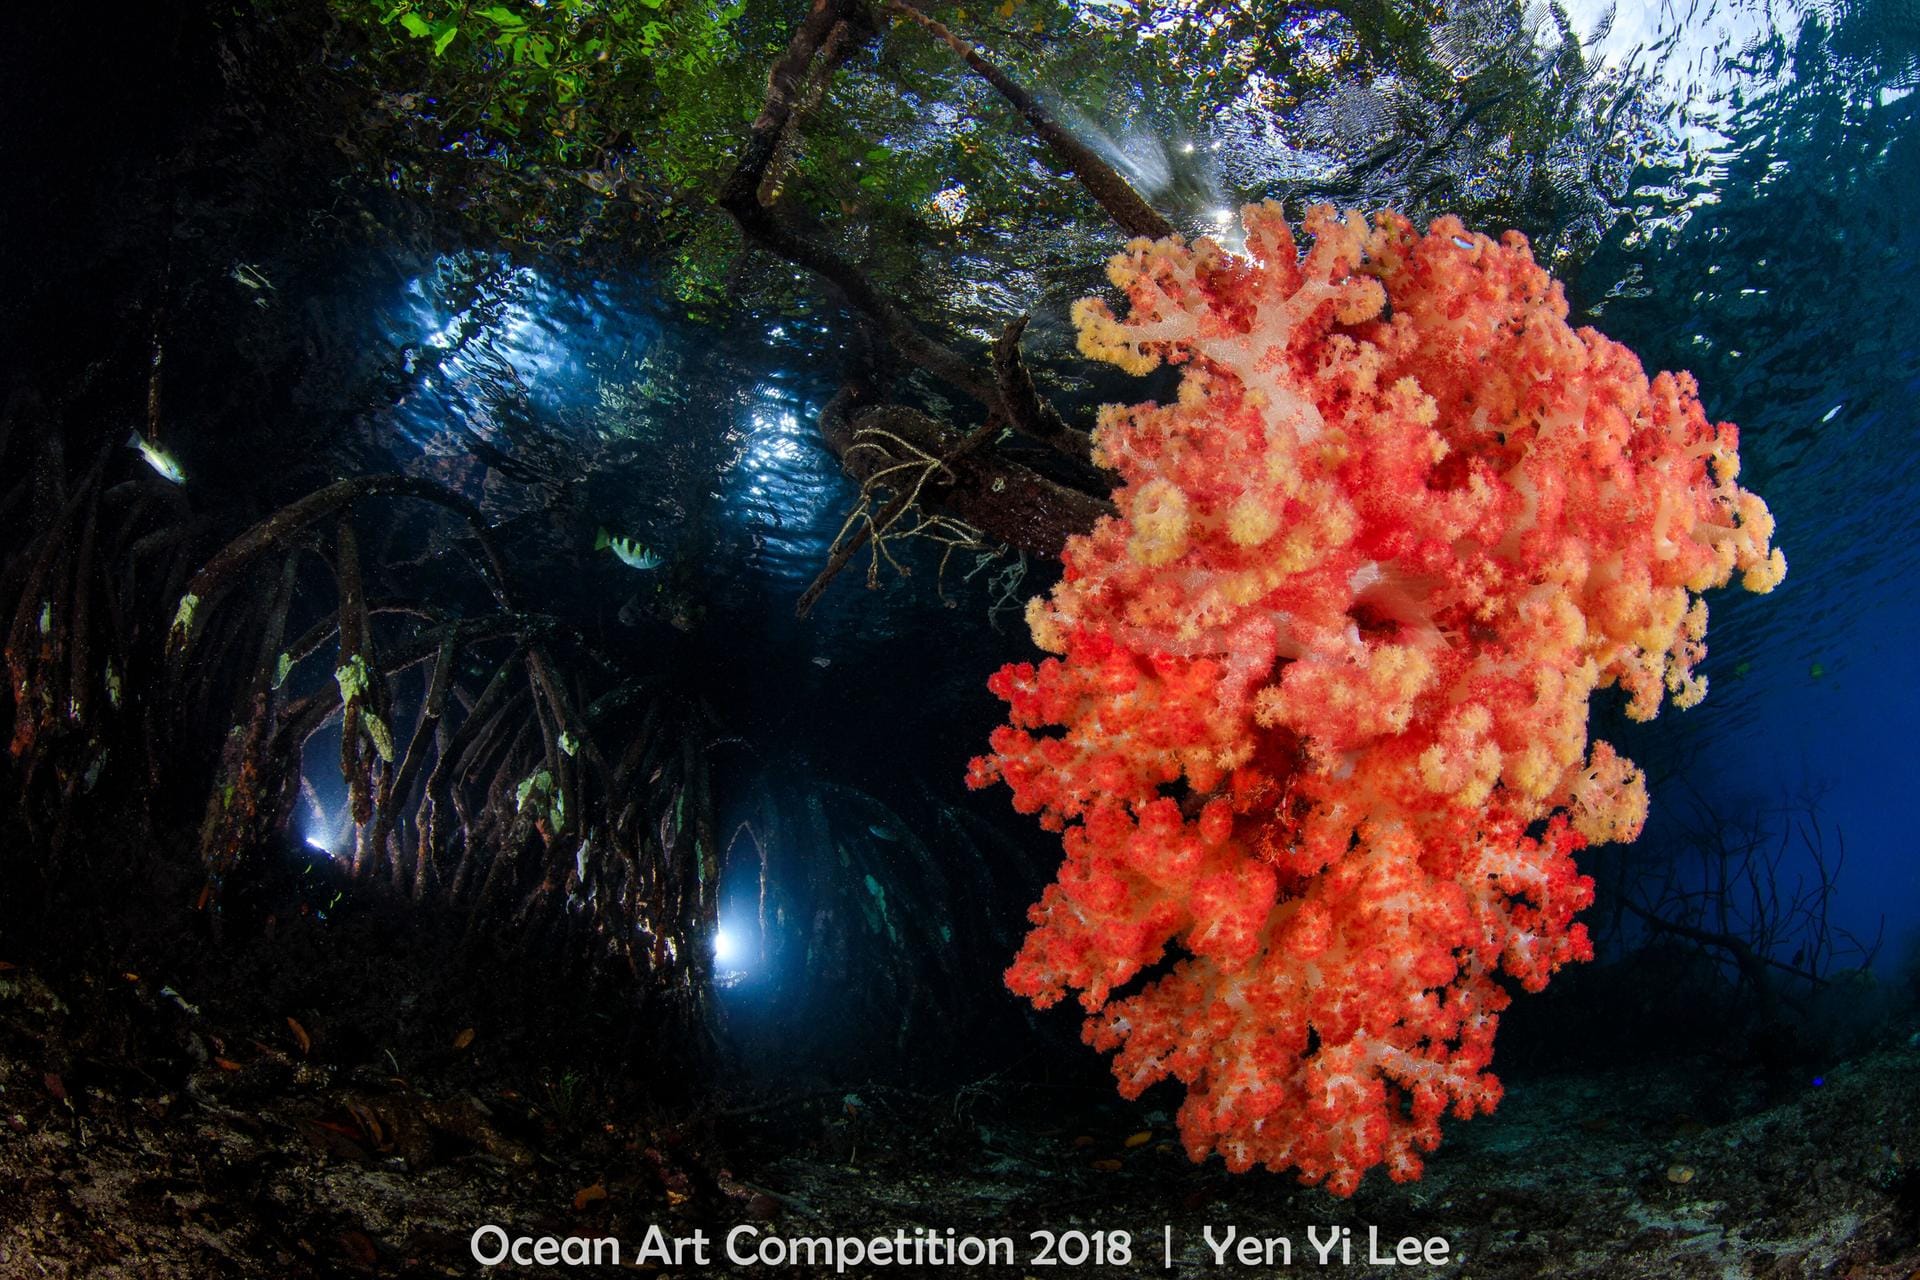 Das Siegerfoto in der Kategorie "Reefscape" ("Rifflandschaft"): Sogenannte Weichkorallen wachsen an Mangrovenwurzeln unter Wasser. Die Aufnahme wurde in Indonesien gemacht.